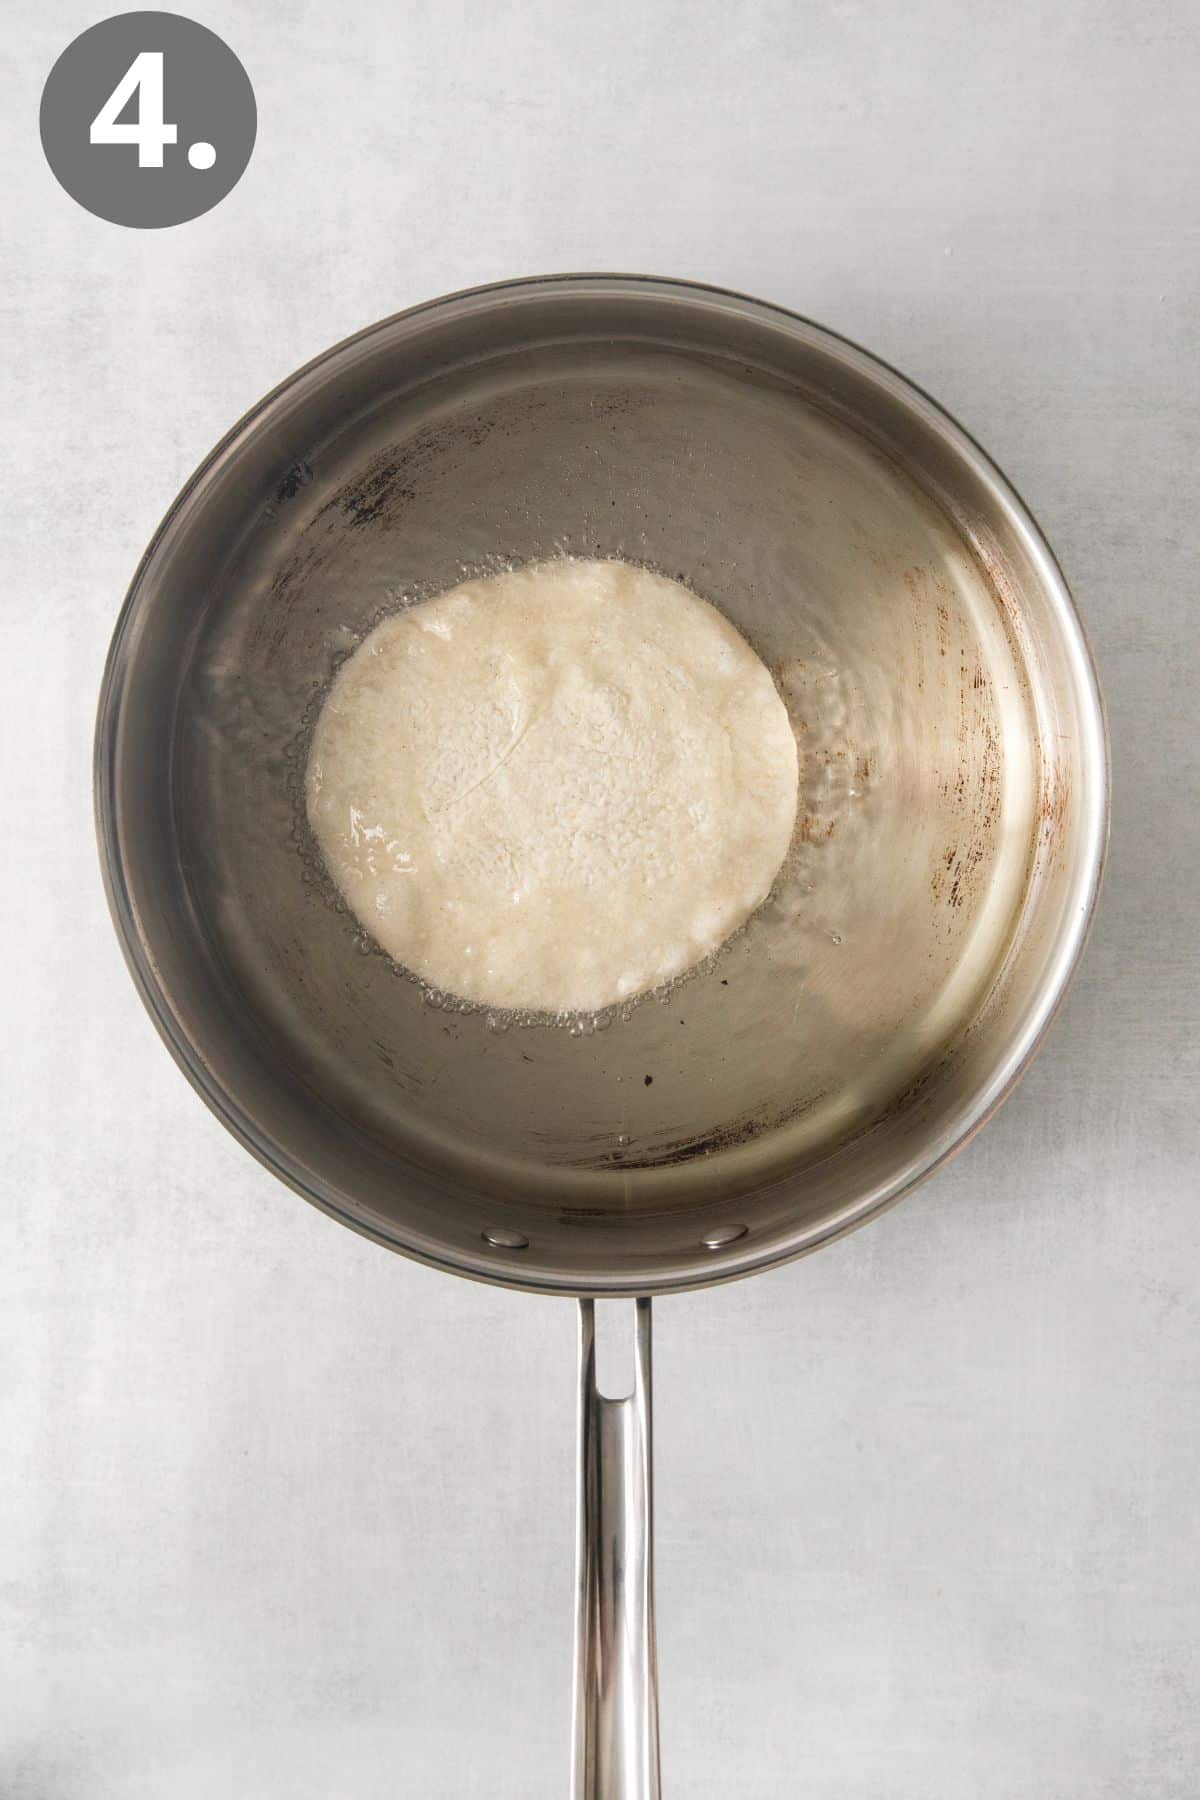 A tortilla in a pan